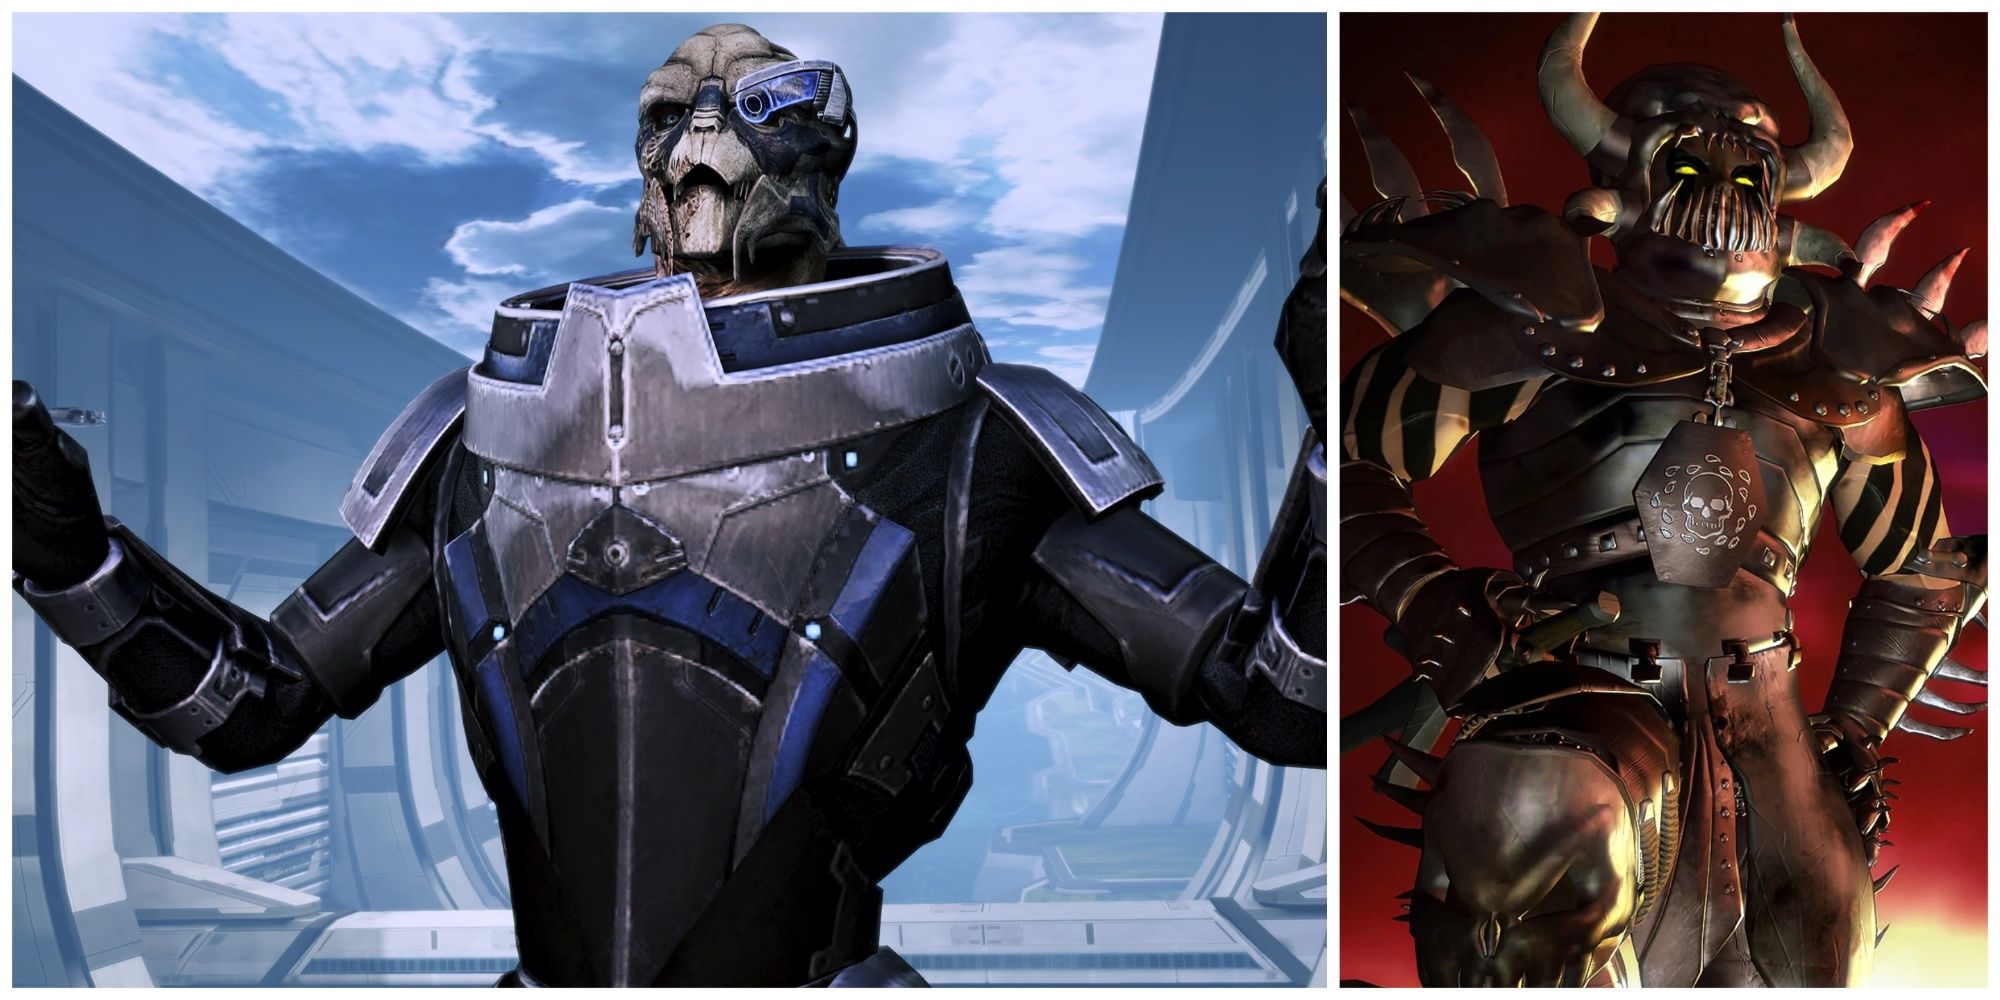 Garrus of Mass Effect 3 and Sarevok from Baldur's Gate